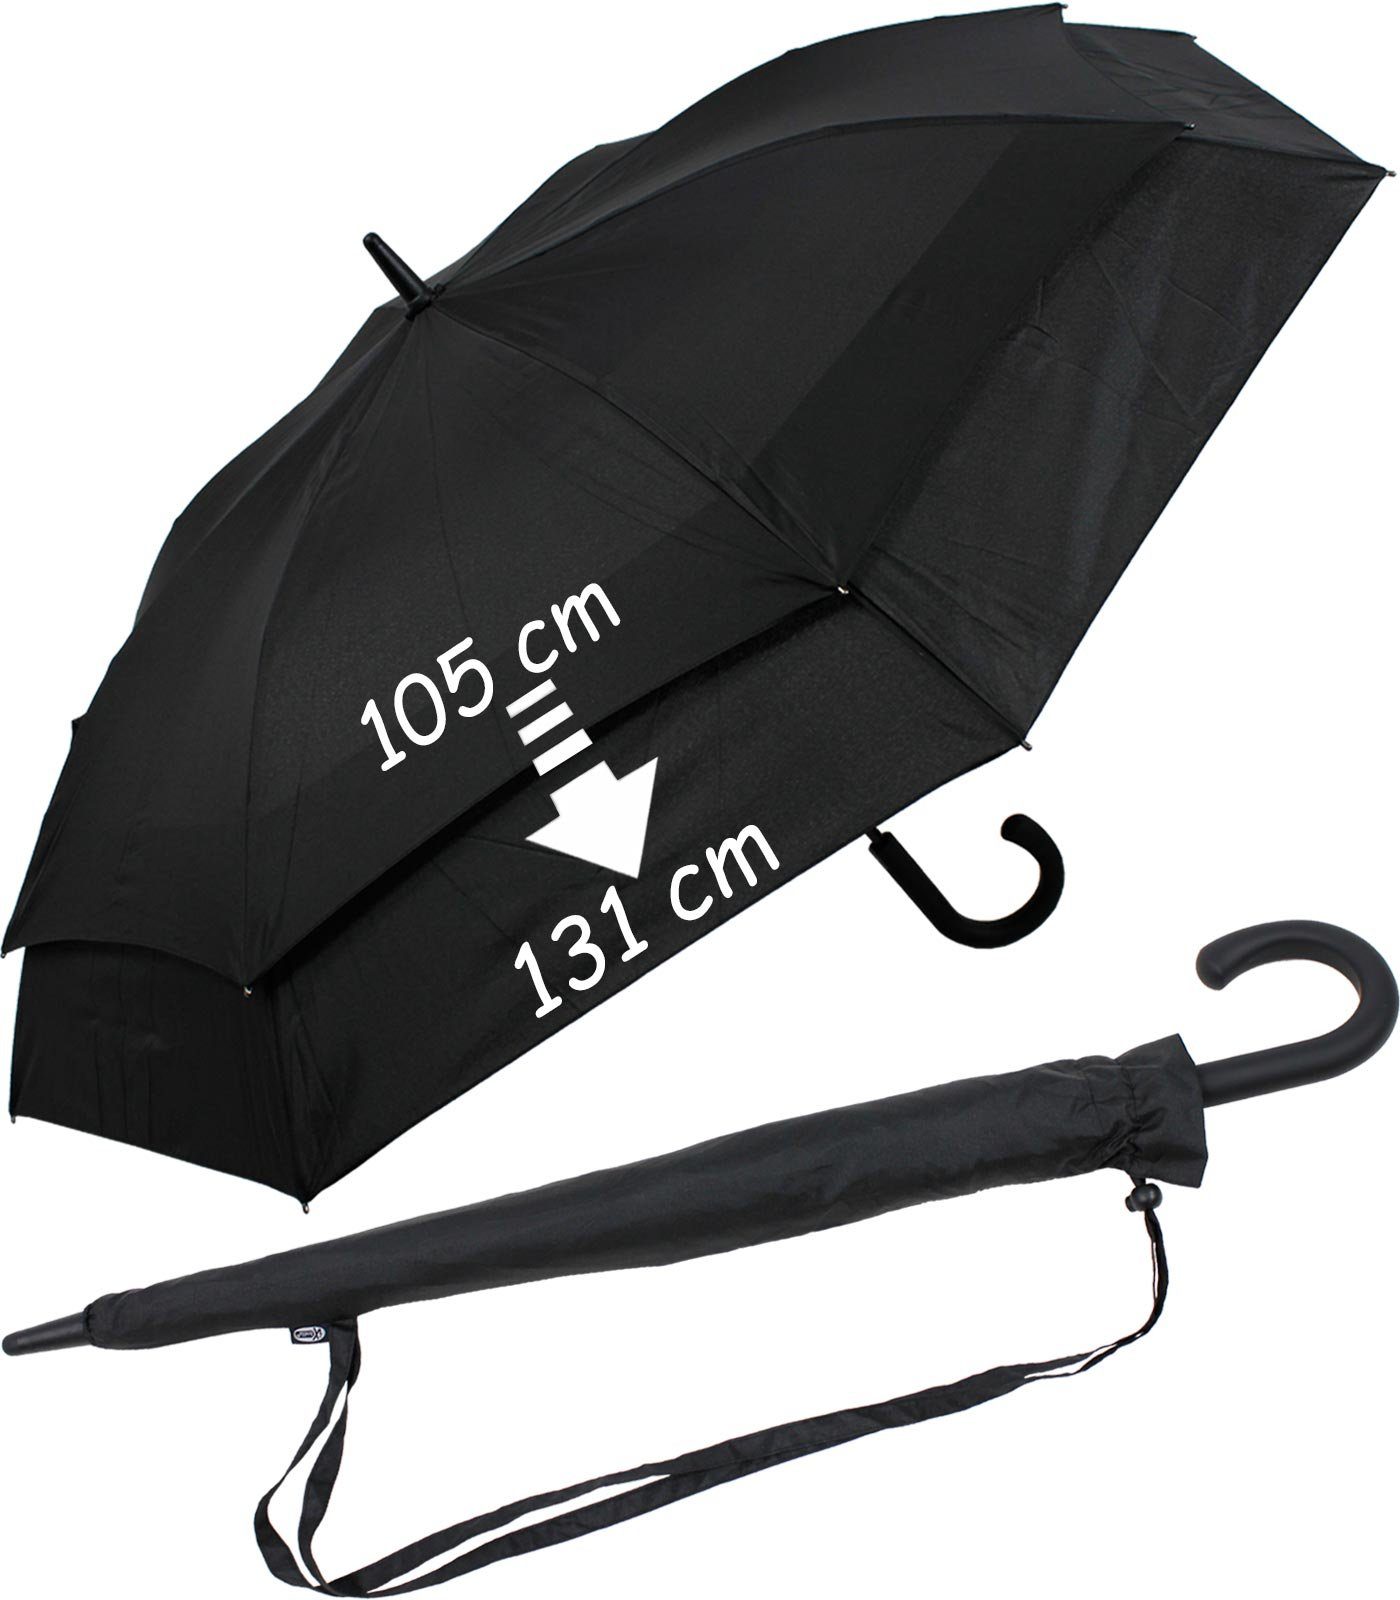 mit XXL Move Schirm schwarz-schwarz Langregenschirm to Automatik, zweifarbig - expandierender iX-brella